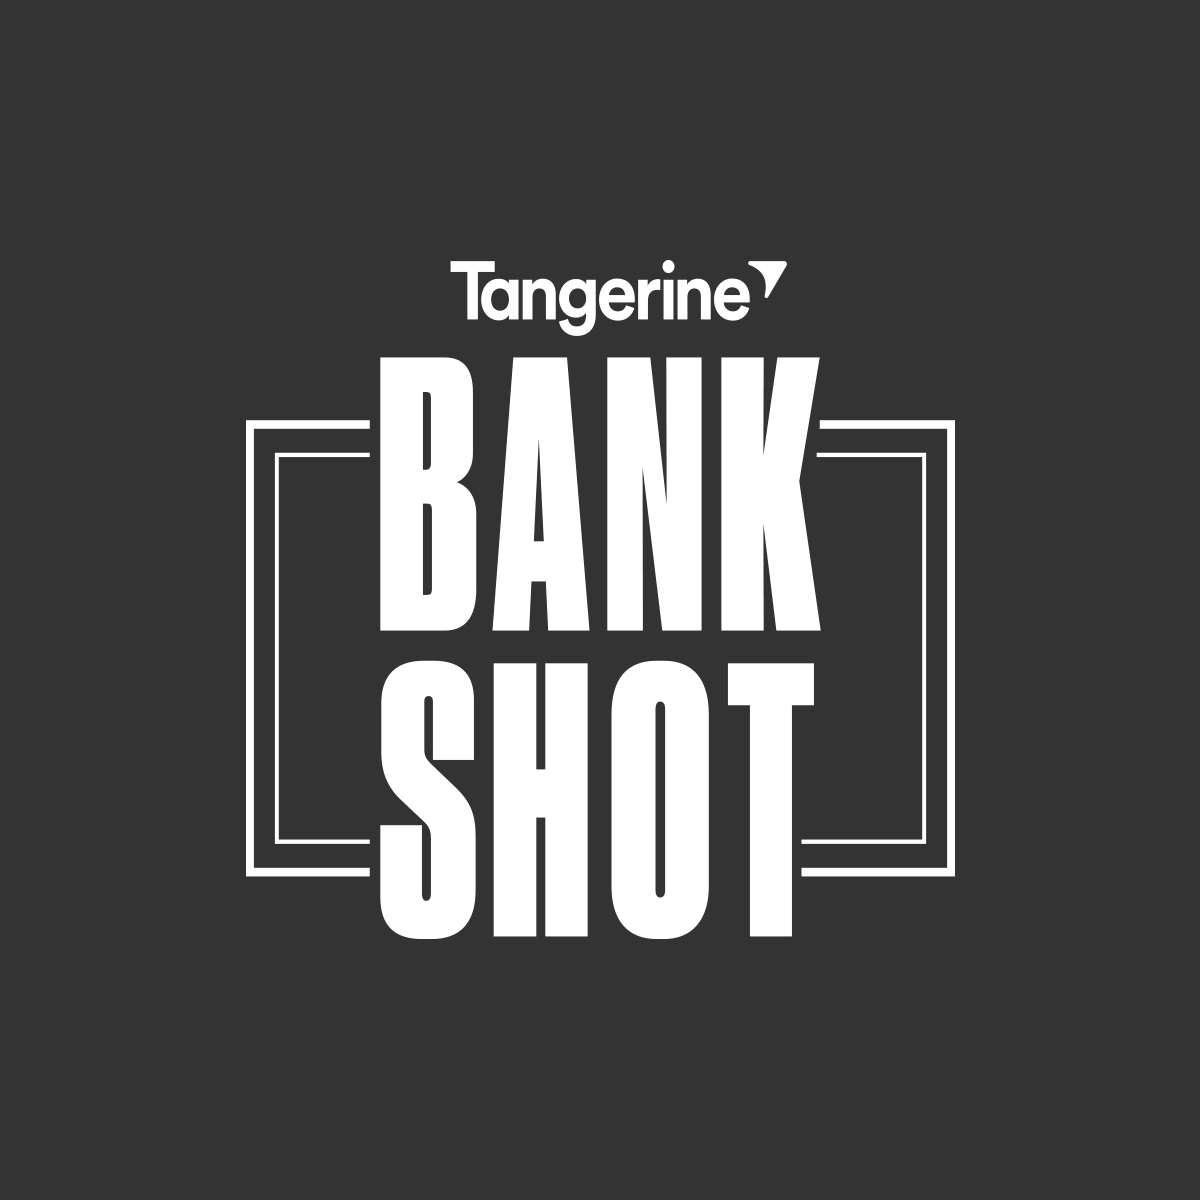 Tangerine Bank Shot